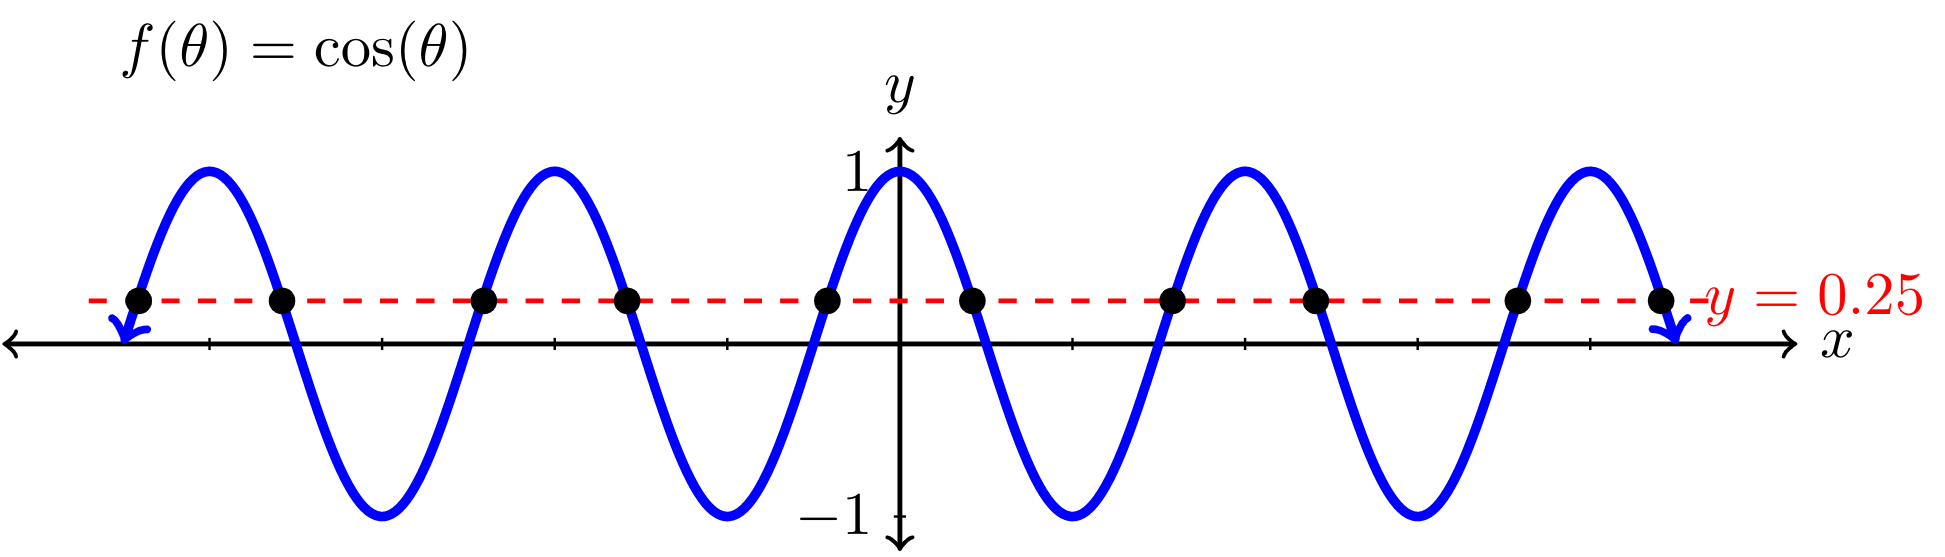 graph of cos(theta)=1/4